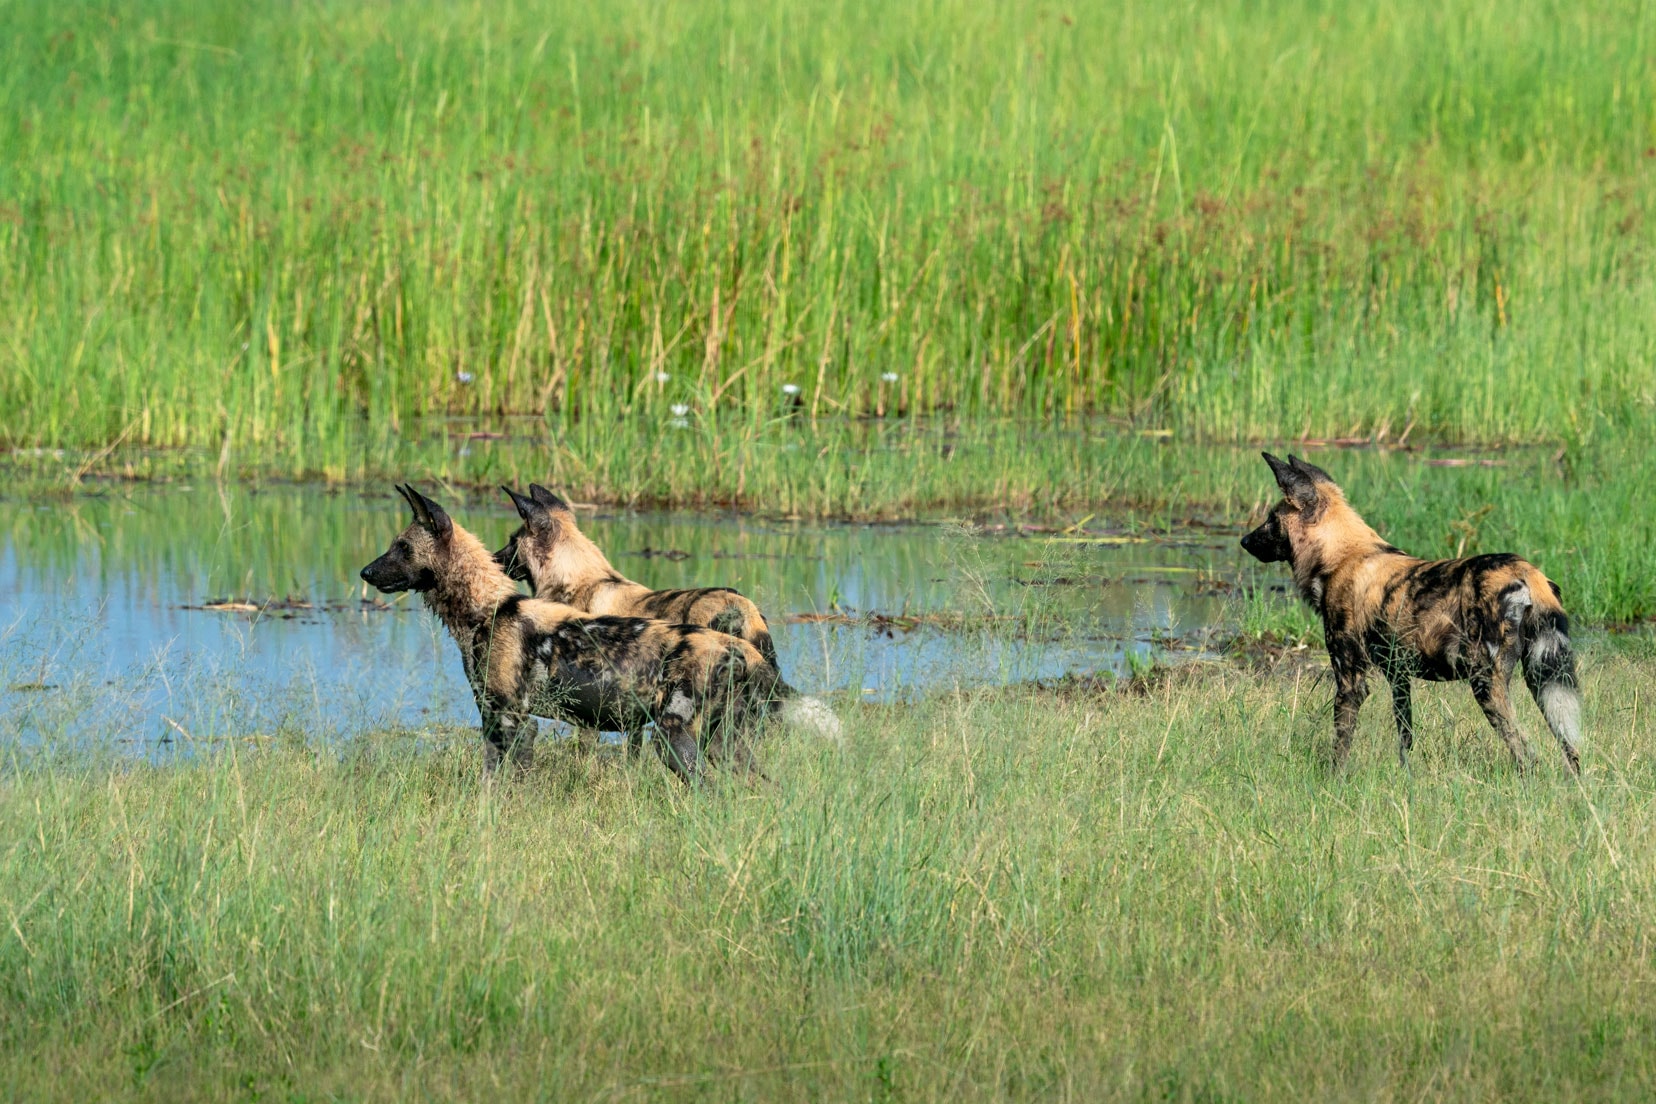 3 wild dogs seen on our Botswana Photo safari